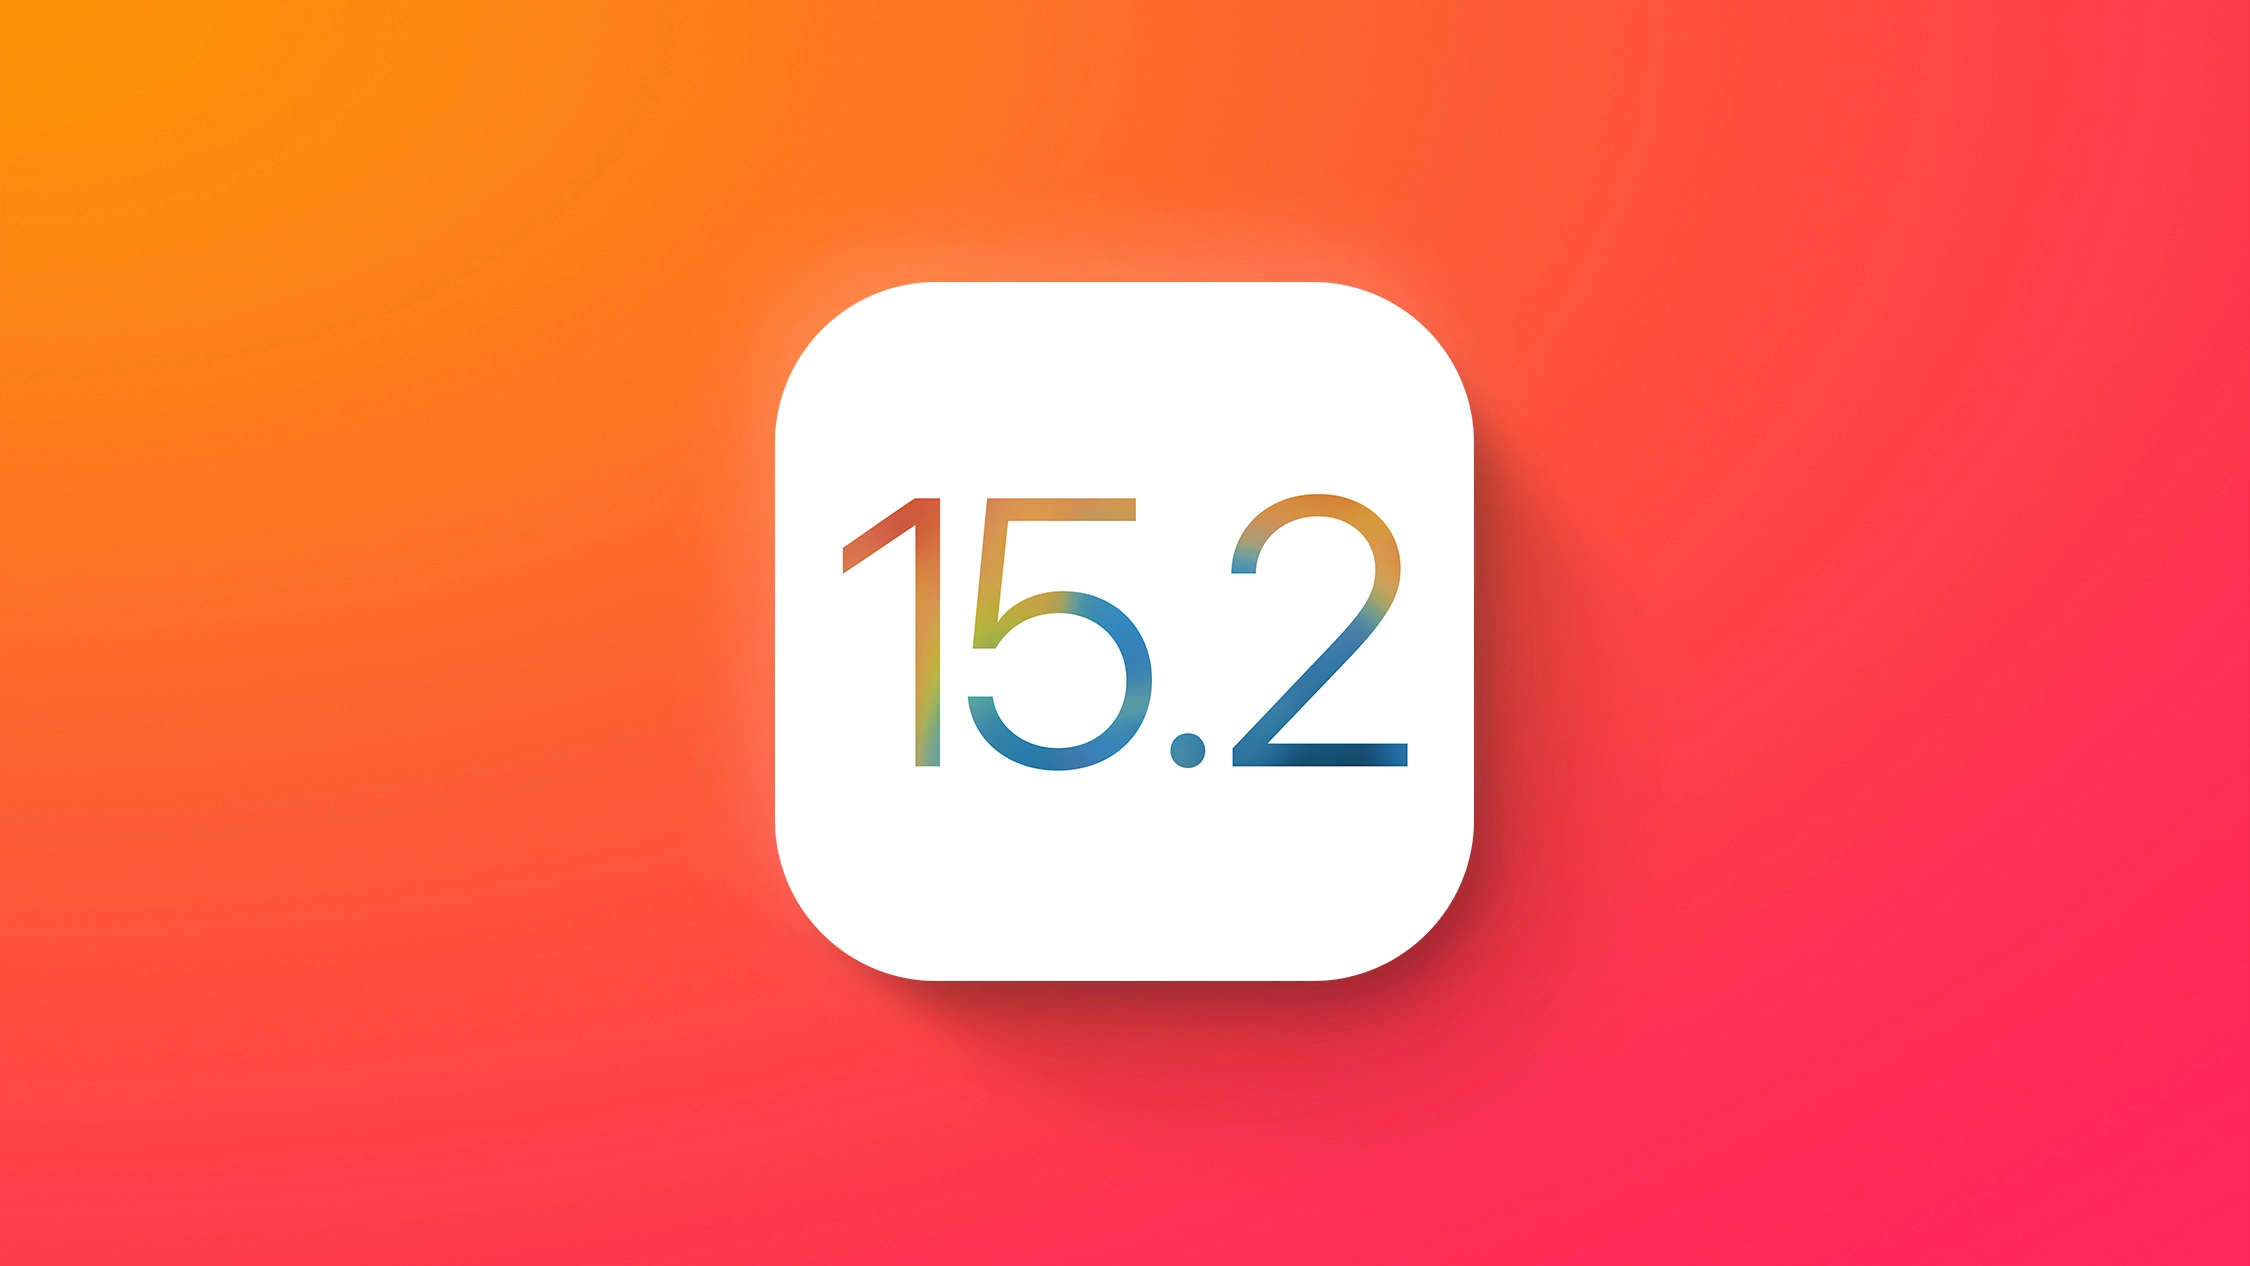 苹果推送 iOS 15.2 Beta 2，支持设置「遗产联系人」，新增微距开关